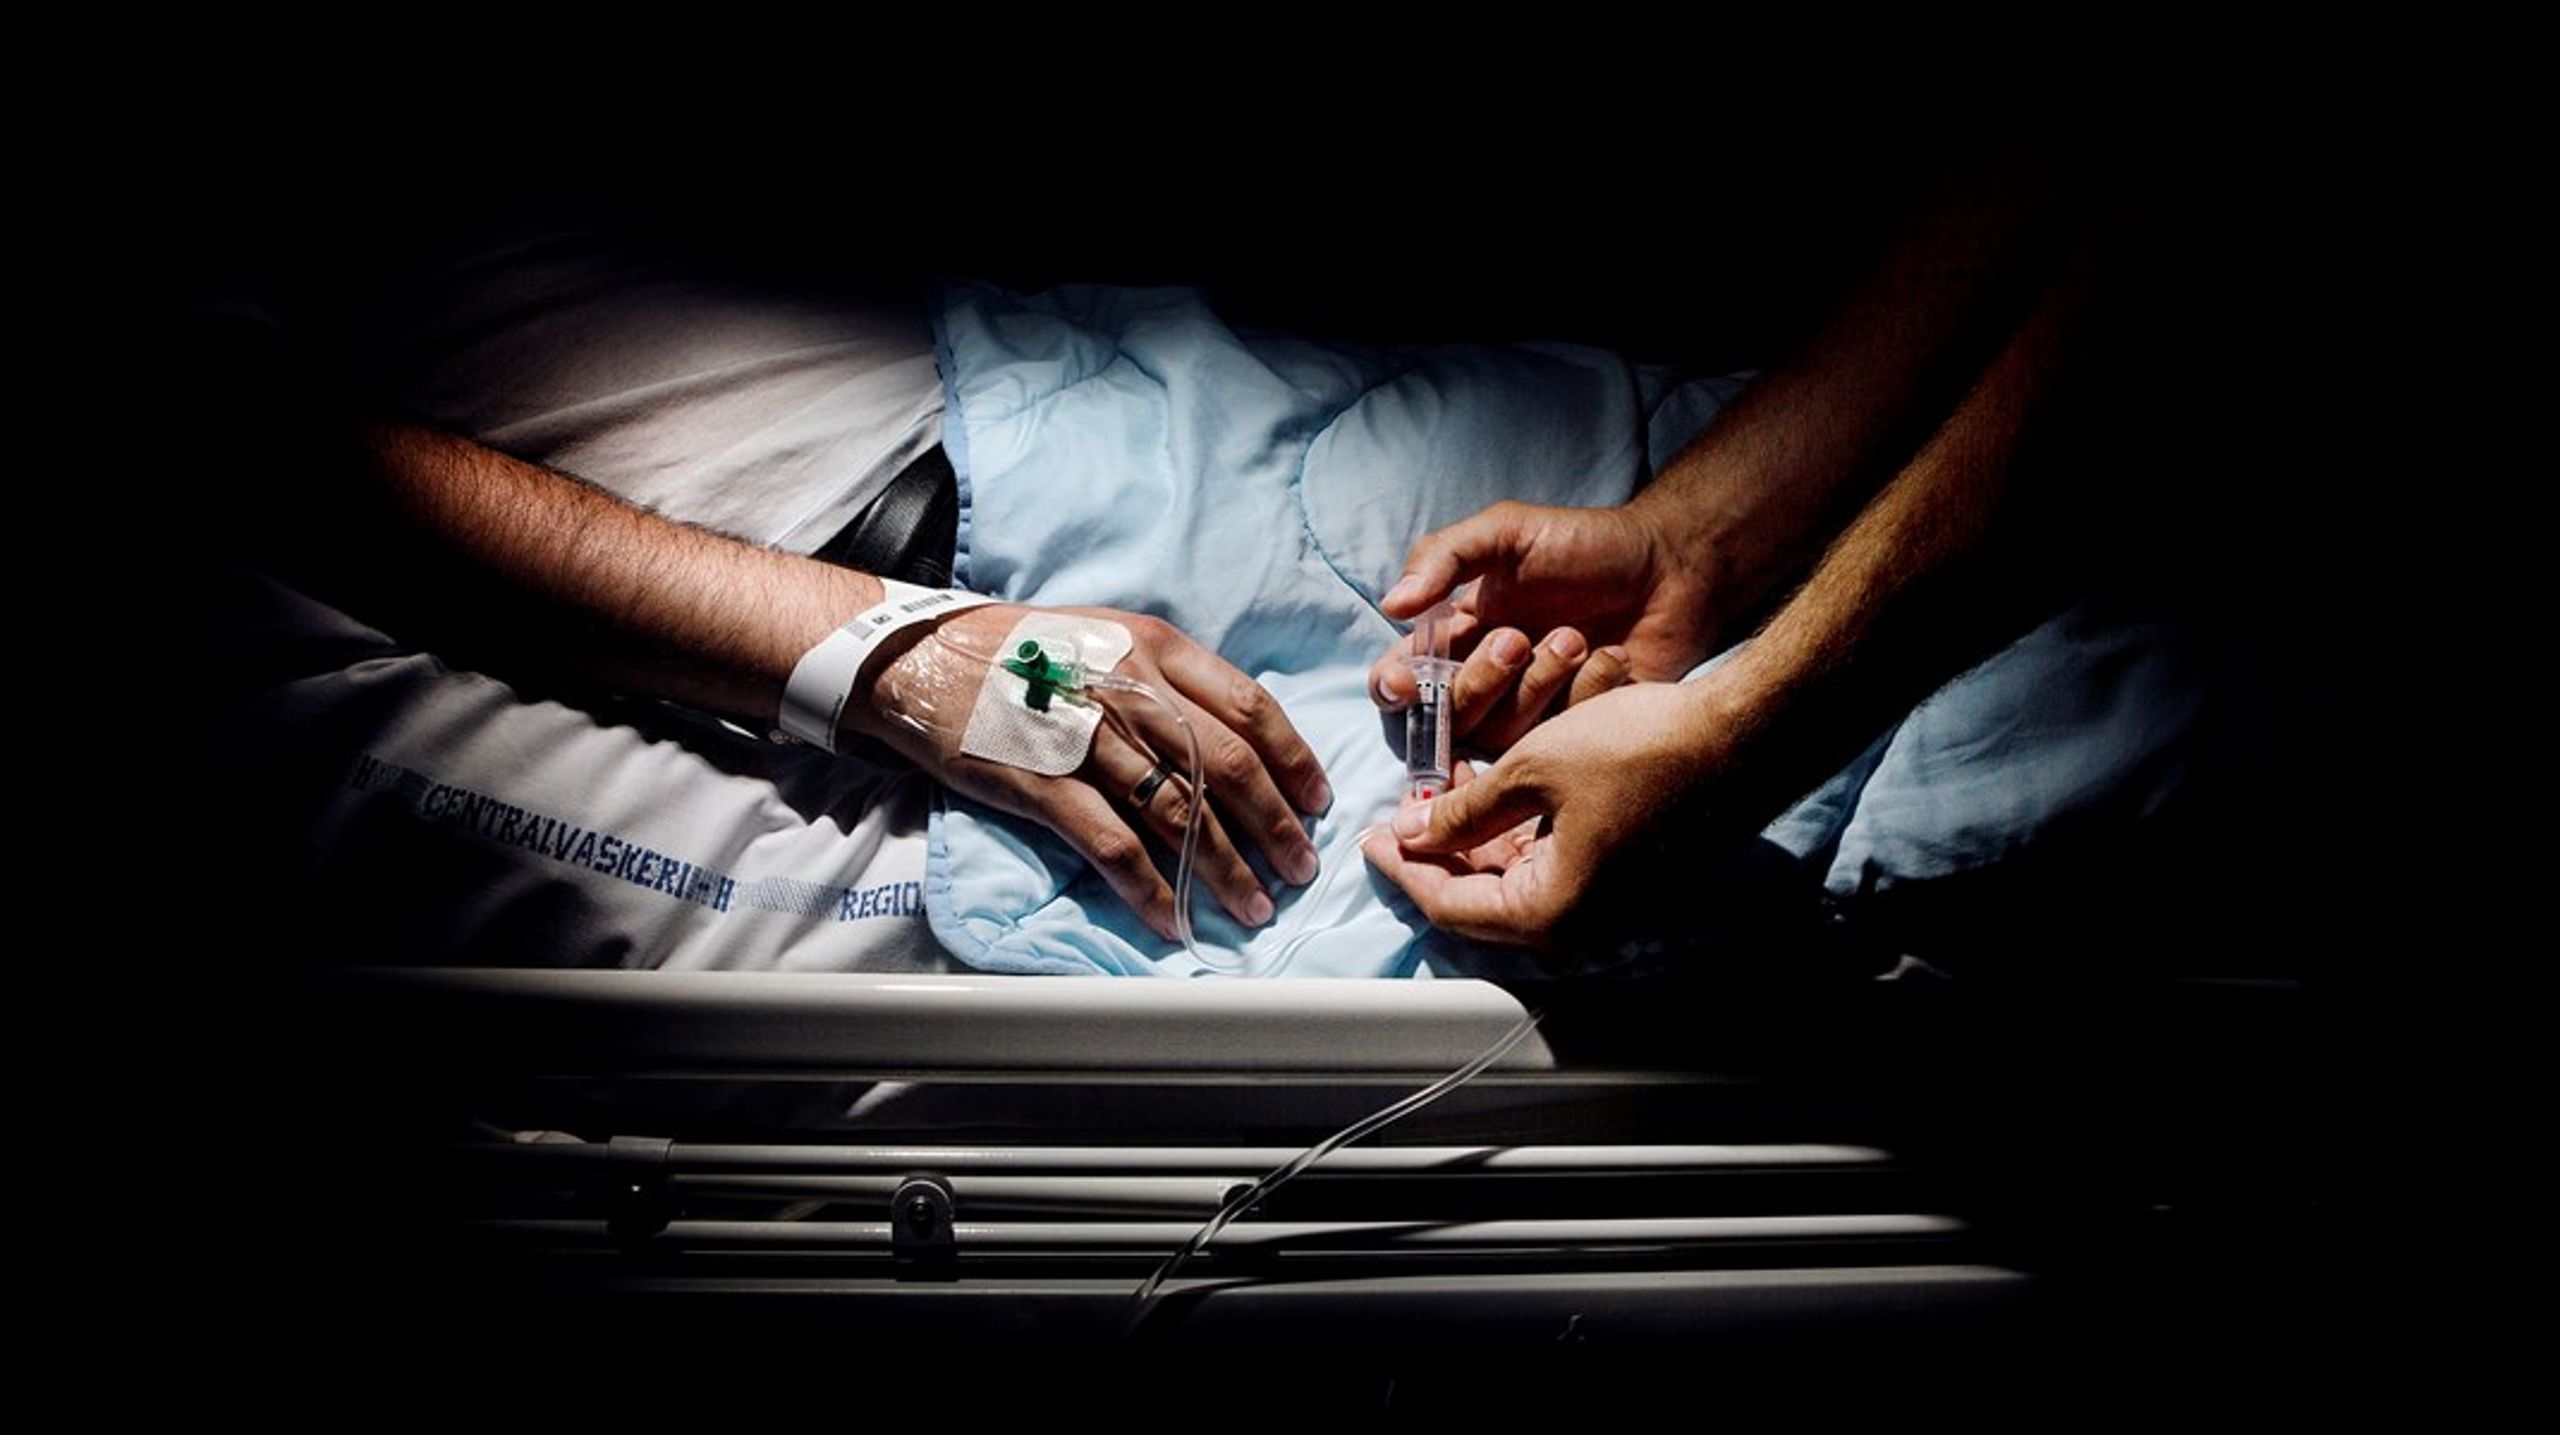 Når dialysepatienter ikke har&nbsp;mulighed for gæstedialyse, er de reelt stavnsbundet til deres lokale sygehus, skriver Michael Buksti.